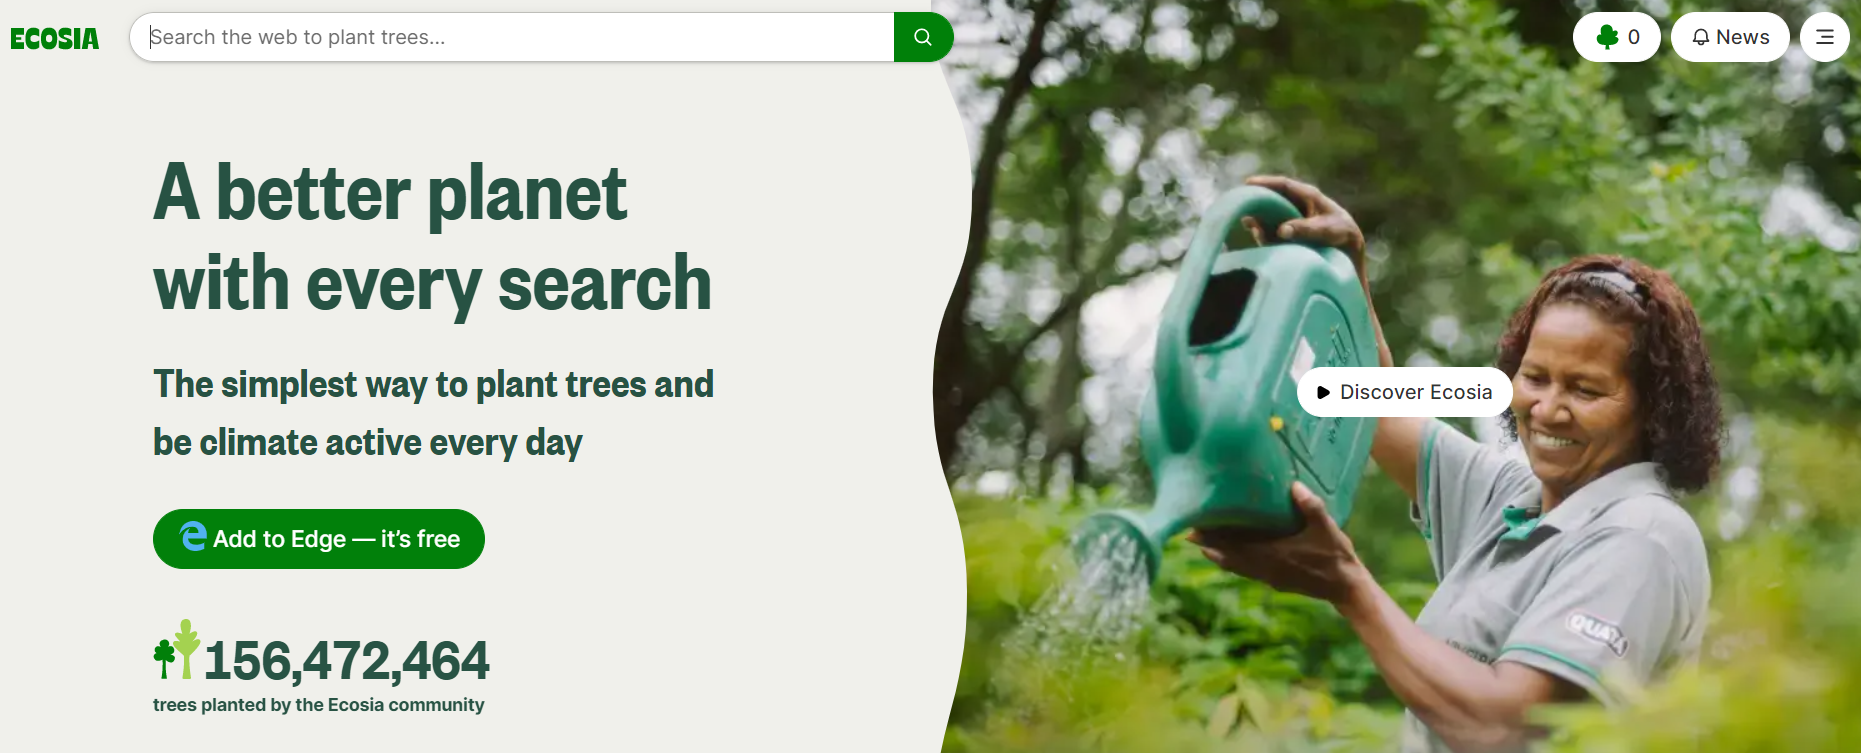 La pagina iniziale del motore di ricerca Ecosia